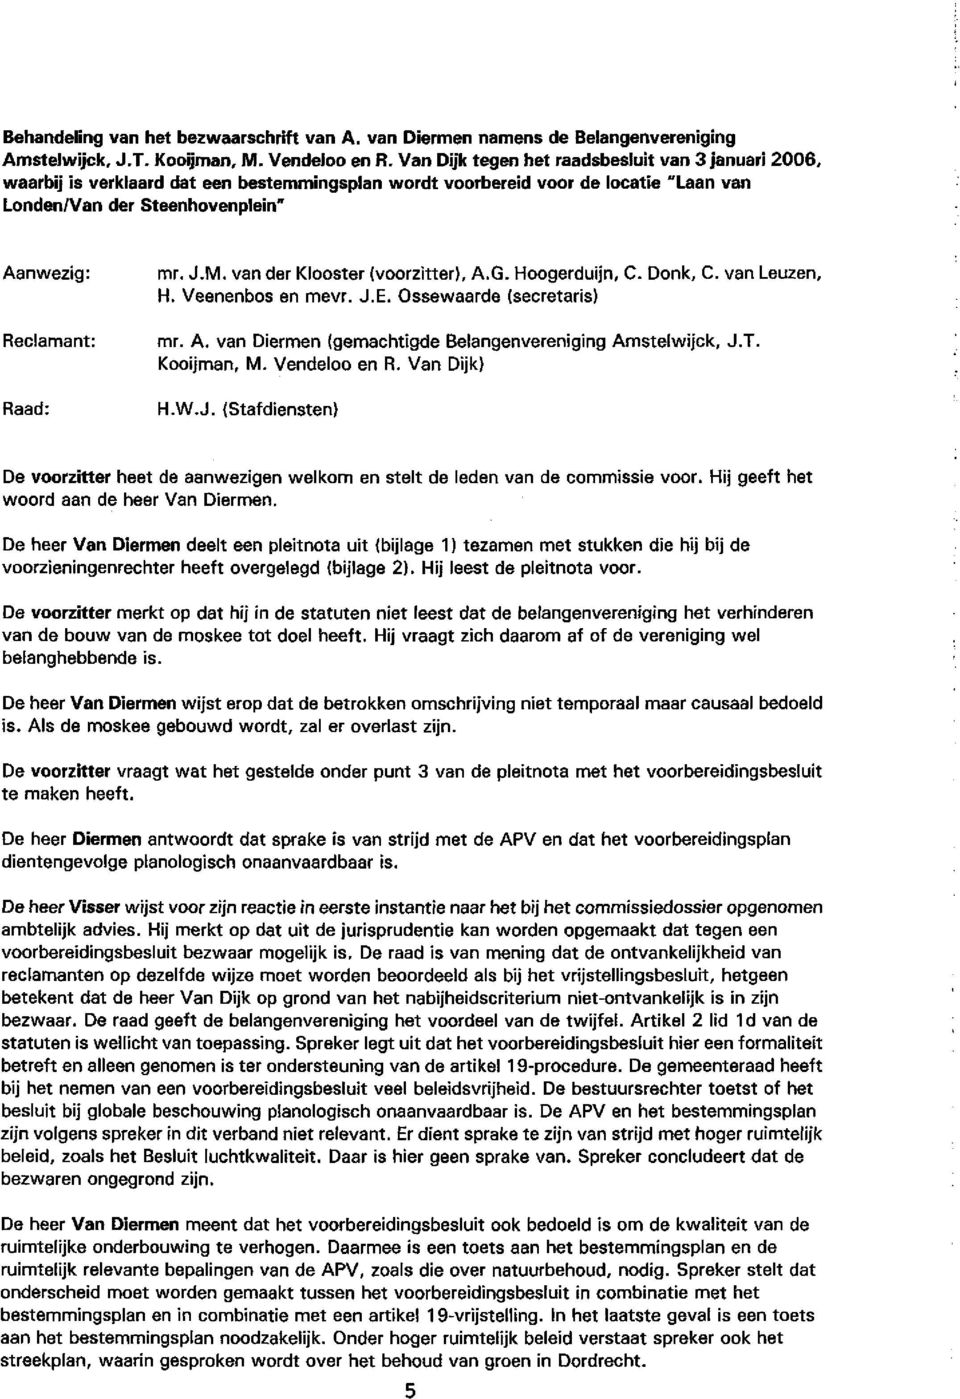 mr. J.M. van der Klooster (voorzitter), A.G. Hoogerduijn, C. Donk, C. van Leuzen, H. Veenenbos en mevr. J.E. Ossewaarde (secretaris) mr. A. van Diermen (gemachtigde Belangenvereniging Amstelwijck, J.